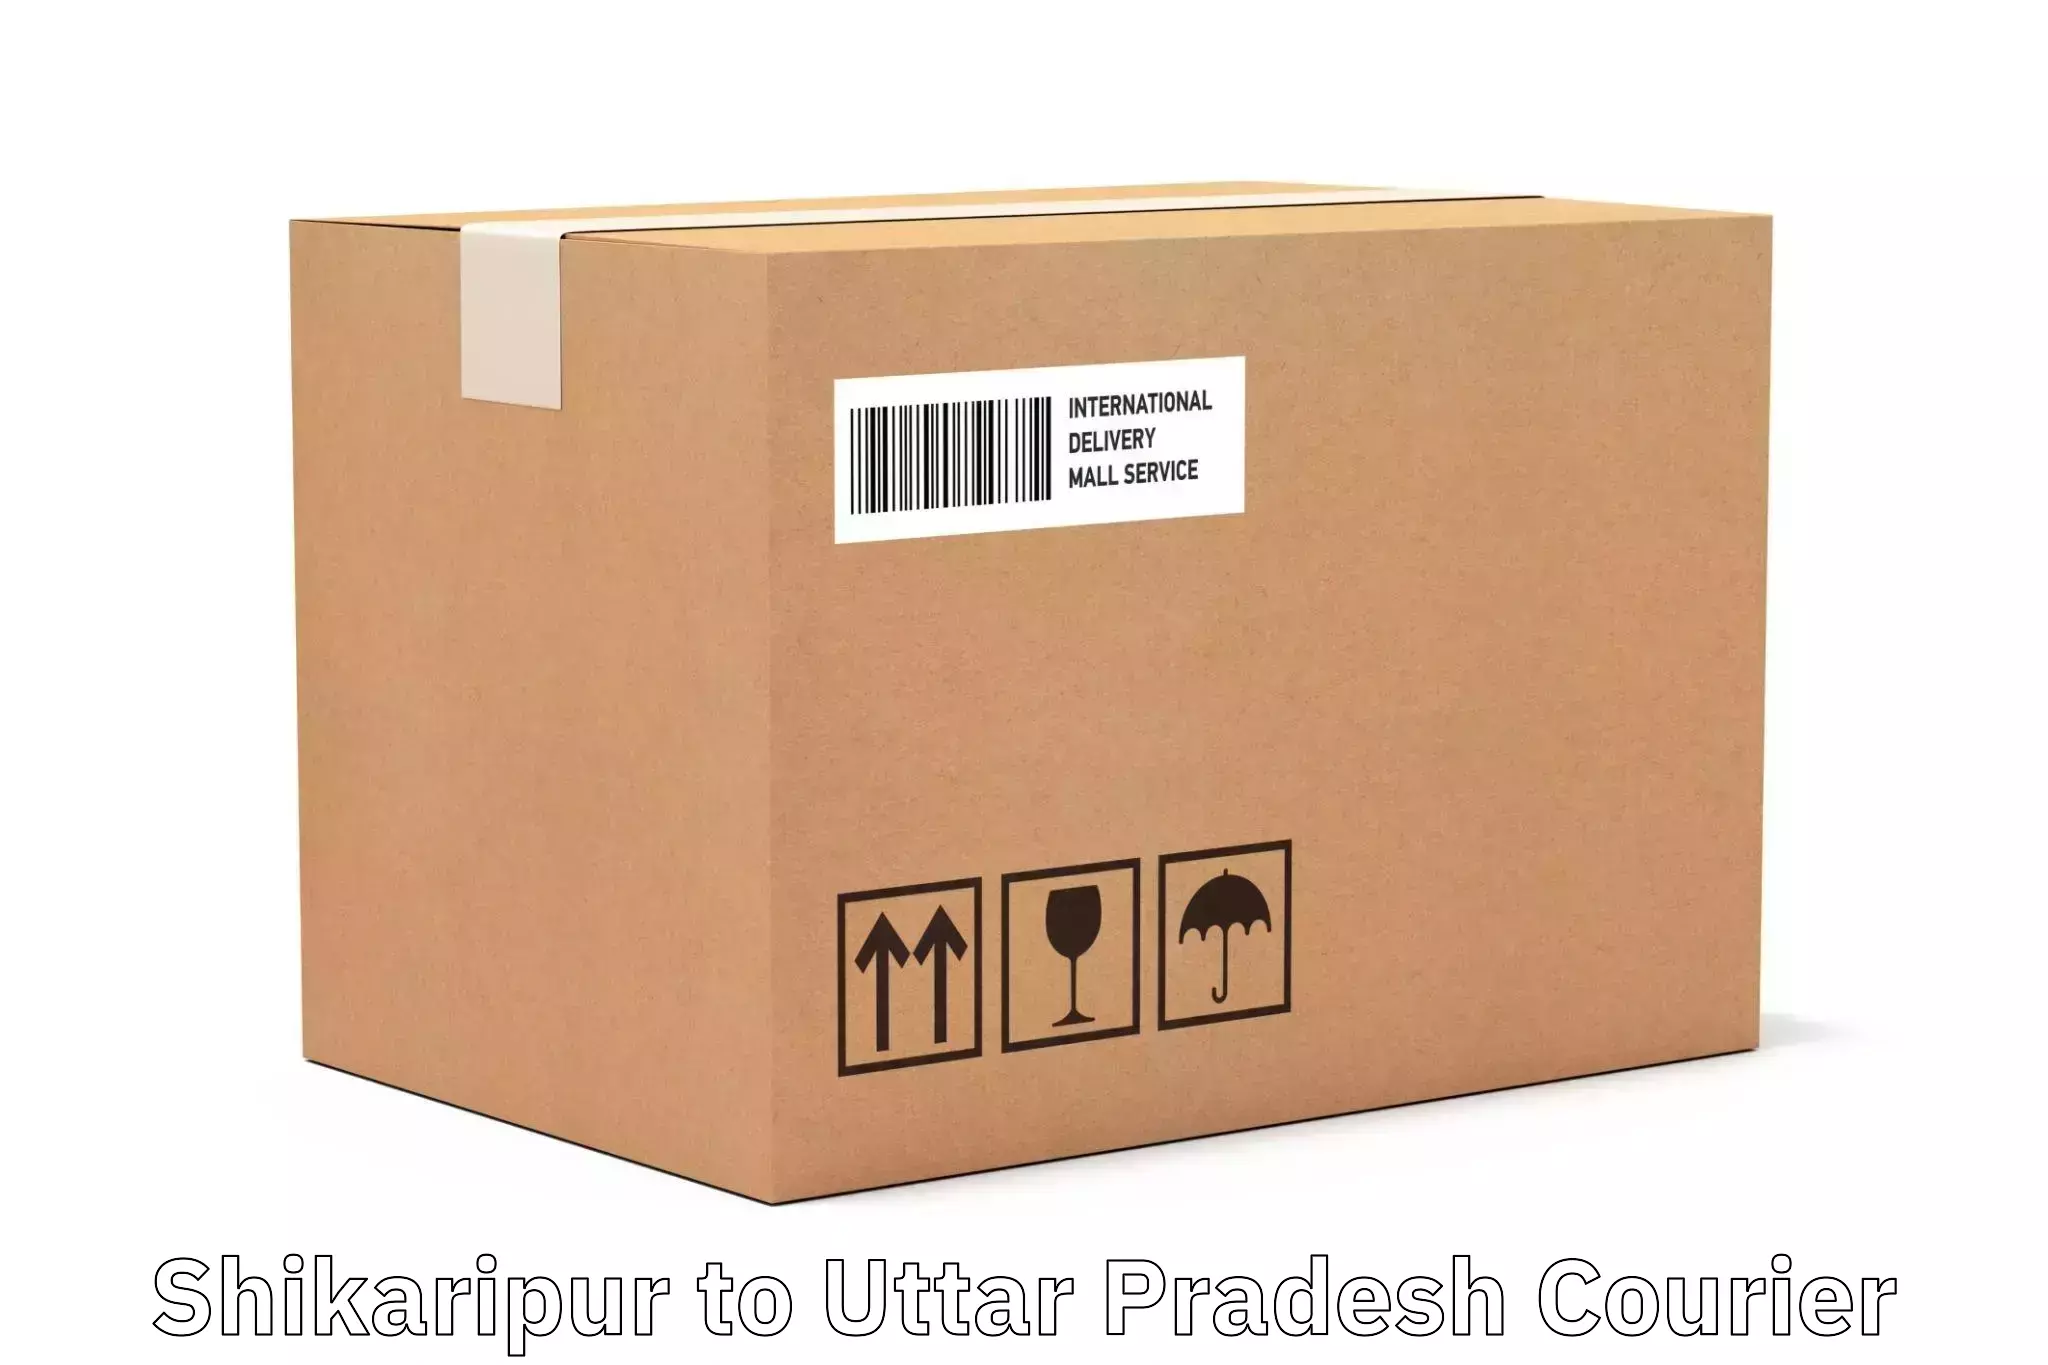 Local delivery service in Shikaripur to Uttar Pradesh